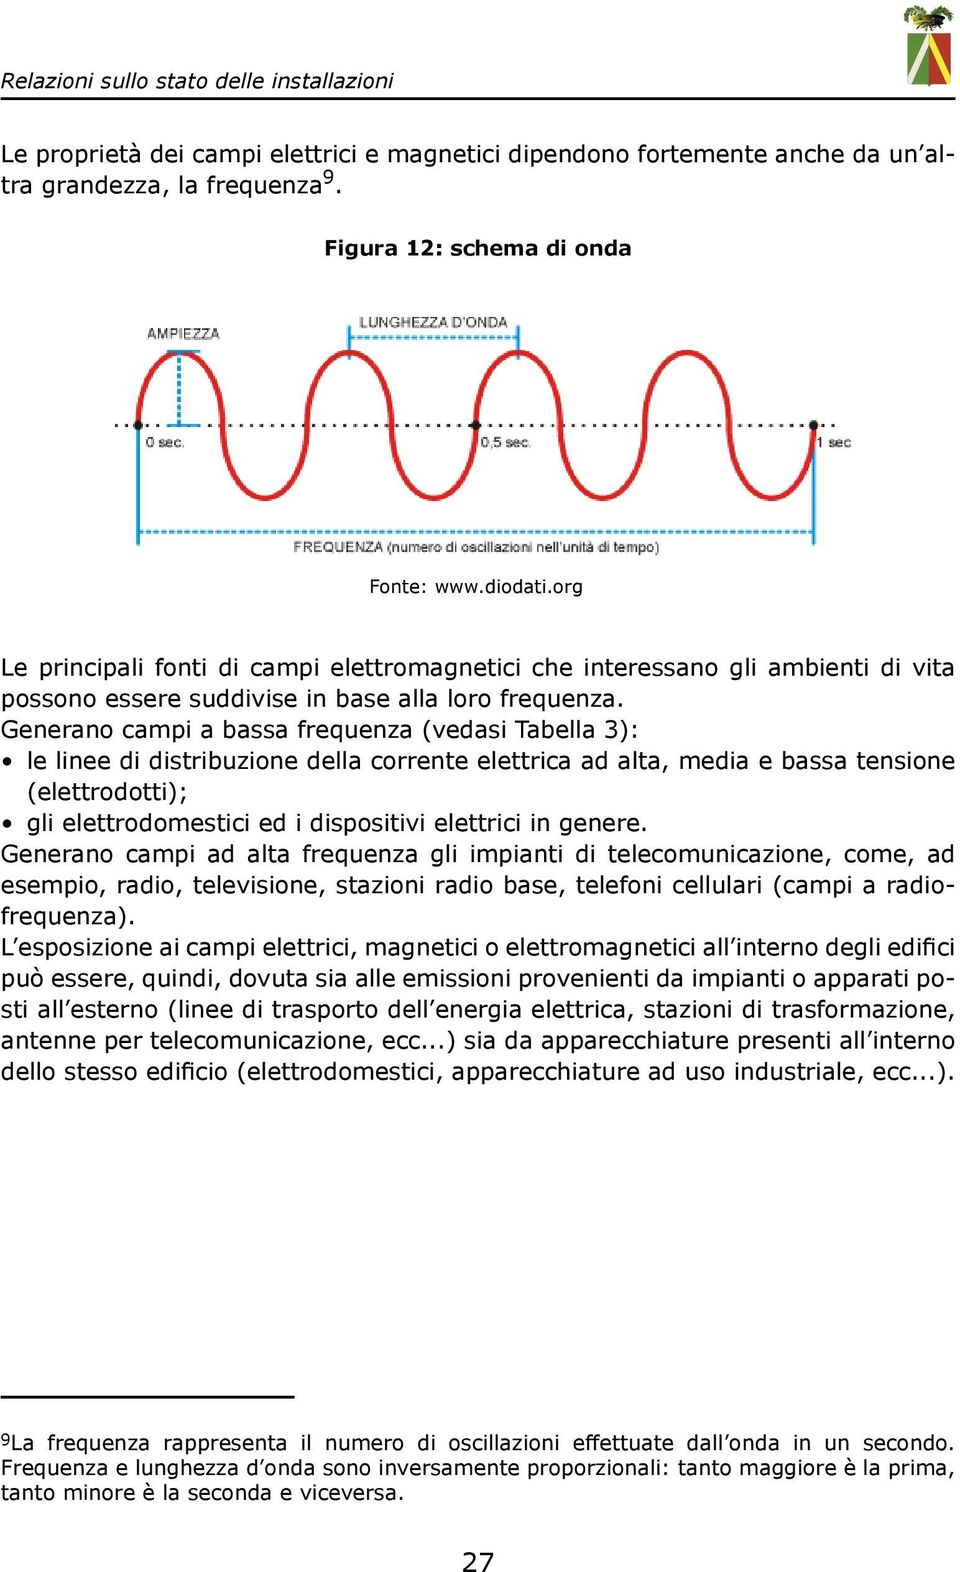 Generano campi a bassa frequenza (vedasi Tabella 3): le linee di distribuzione della corrente elettrica ad alta, media e bassa tensione (elettrodotti); gli elettrodomestici ed i dispositivi elettrici